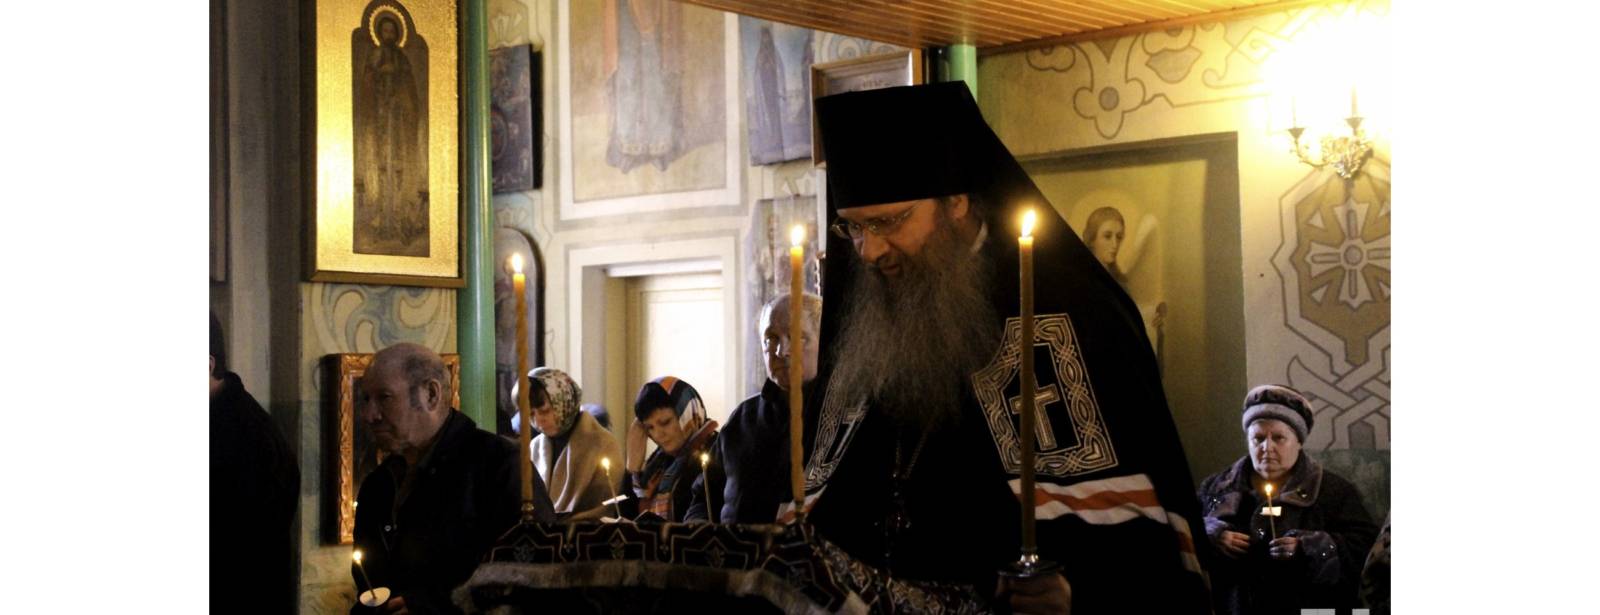 Великое повечерие с чтением канона Андрея Критского в храме Святителя Николая Архиепископа Мирликийского.